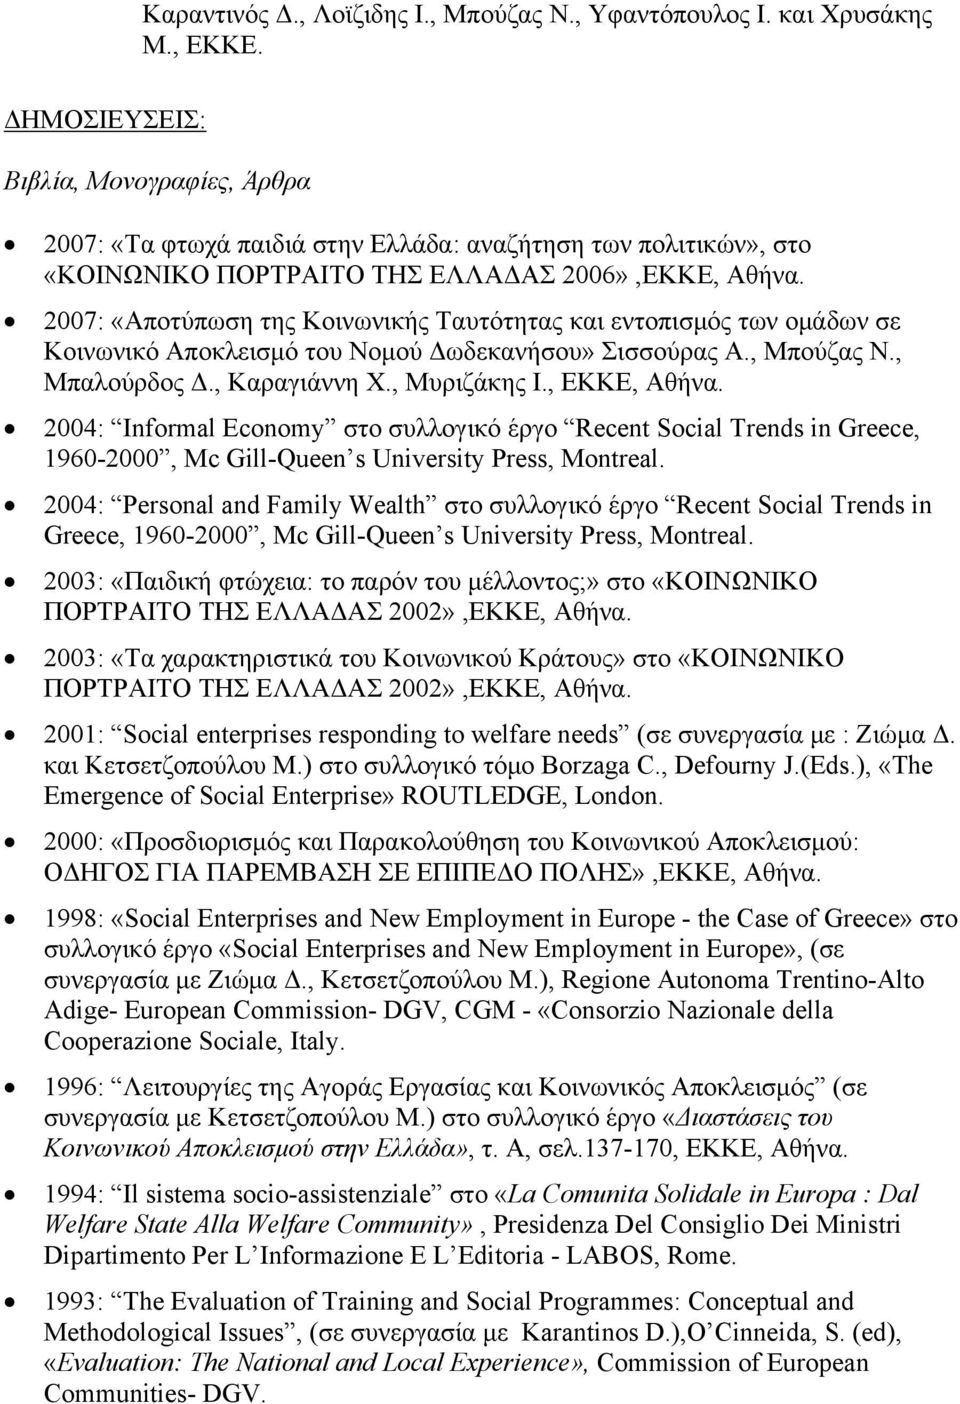 2007: «Αποτύπωση της Κοινωνικής Ταυτότητας και εντοπισμός των ομάδων σε Κοινωνικό Αποκλεισμό του Νομού Δωδεκανήσου» Σισσούρας Α., Μπούζας Ν., Μπαλούρδος Δ., Καραγιάννη Χ., Μυριζάκης Ι., ΕΚΚΕ, Αθήνα.